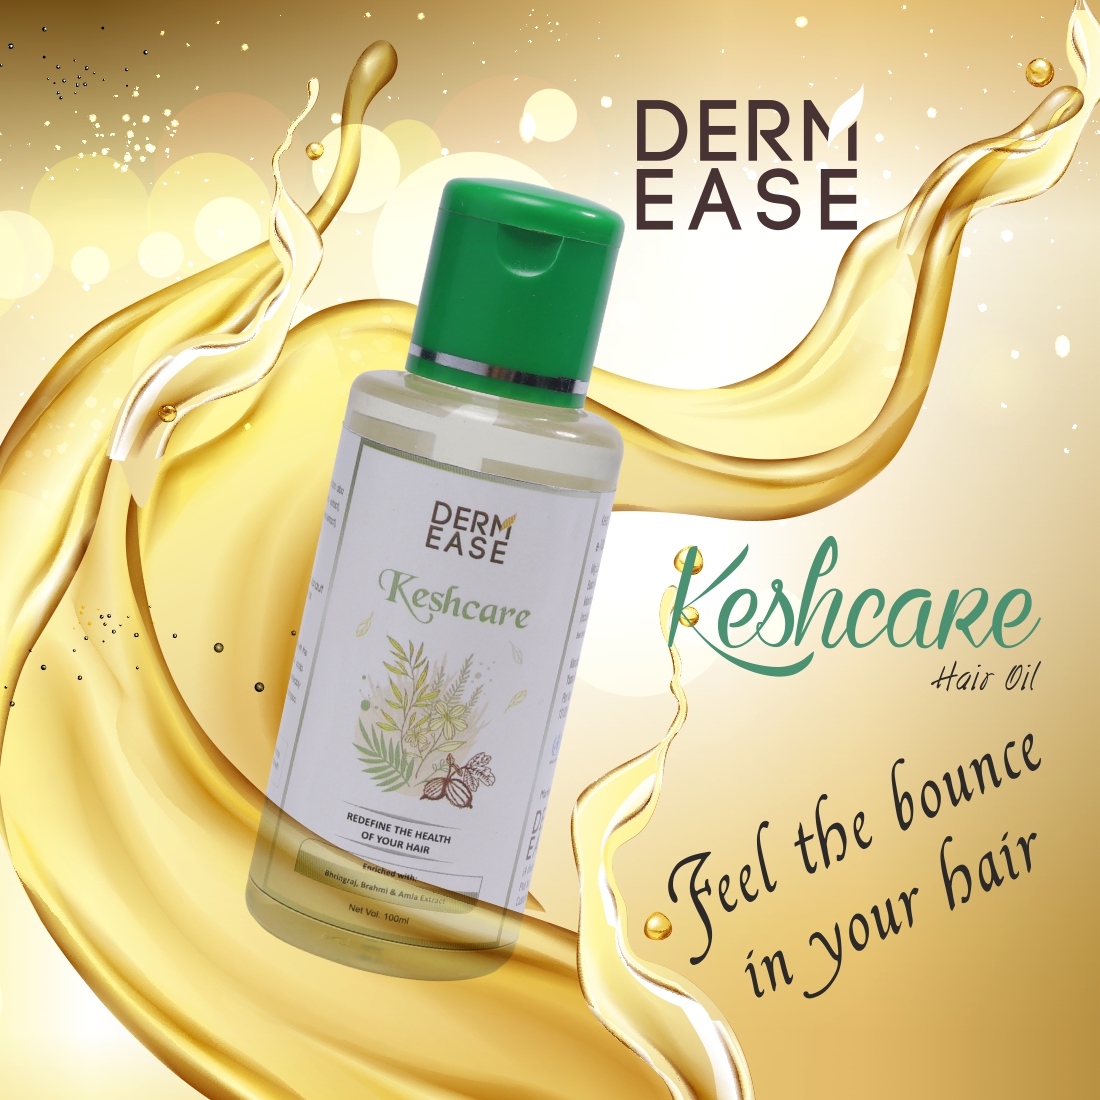 DERM EASE Keshcare Hair Oil Combo